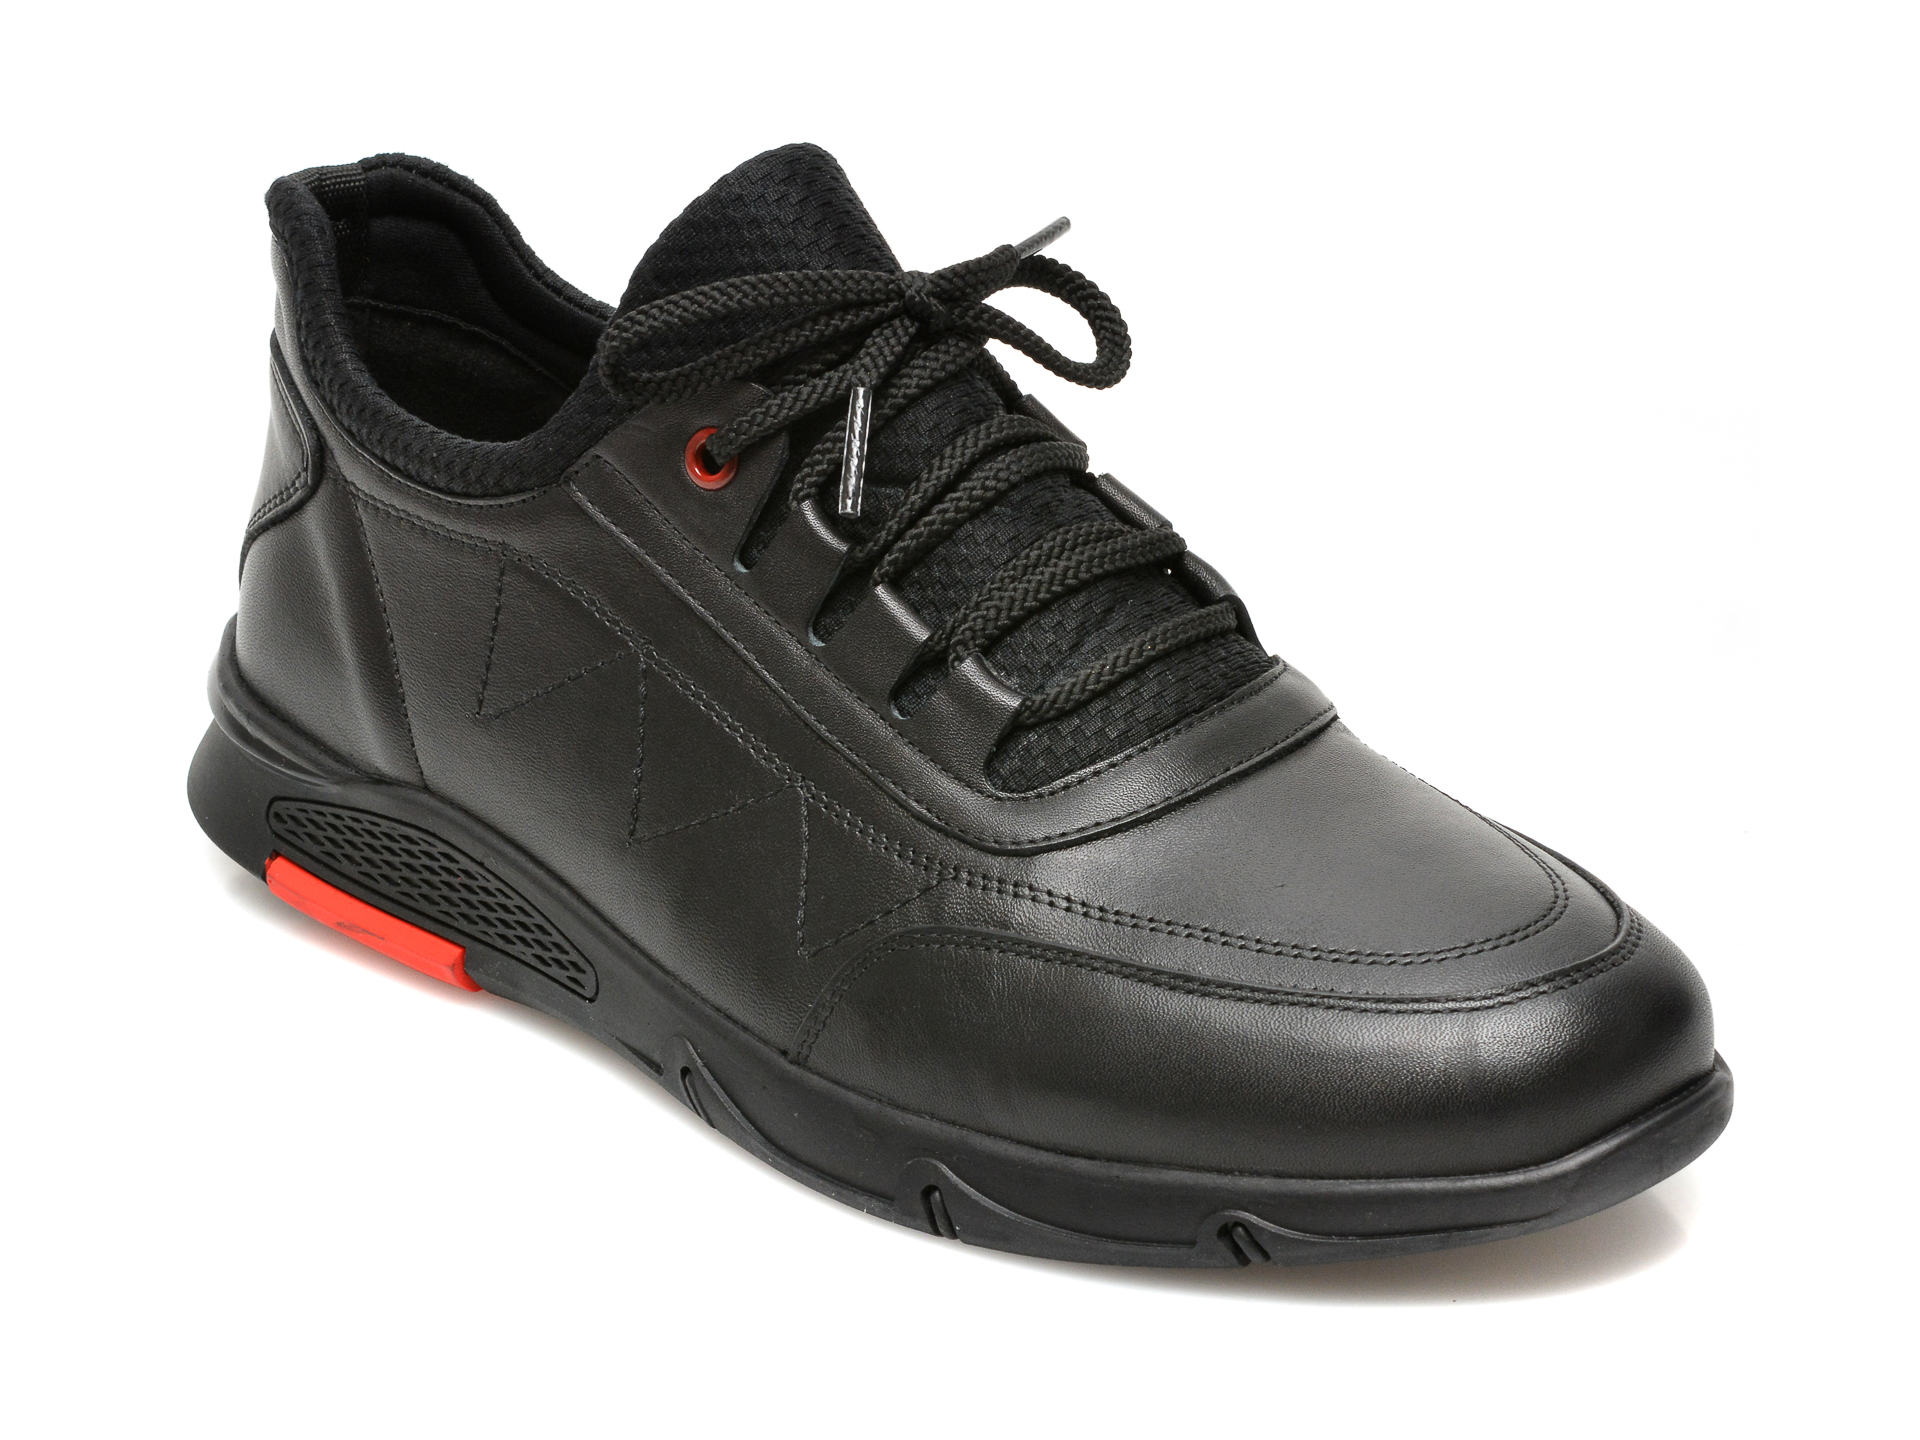 Pantofi OTTER negri, CASPER3, din piele naturala 2023 ❤️ Pret Super Black Friday otter.ro imagine noua 2022